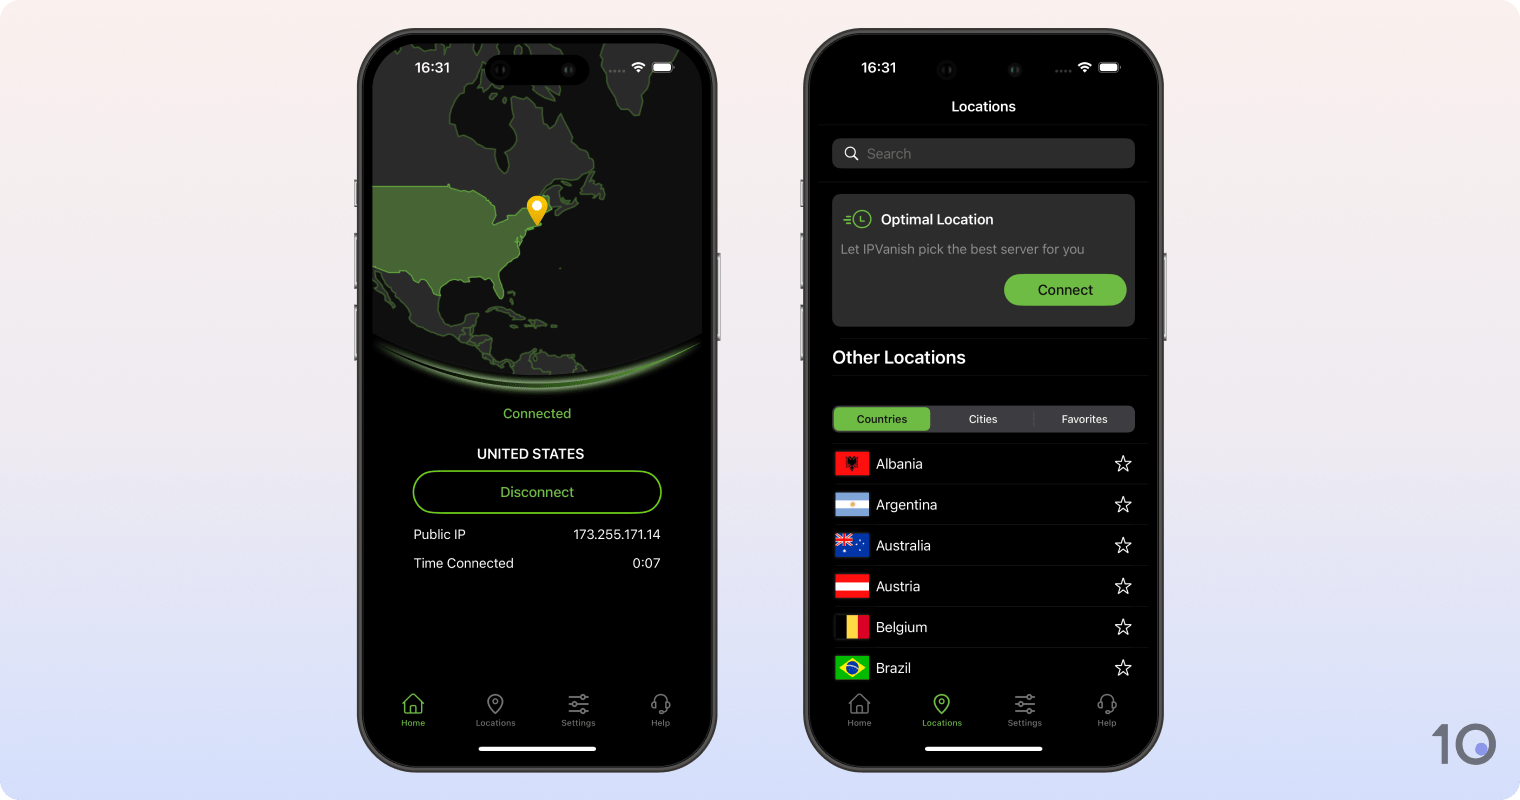 IPVanish's VPN app for iOS